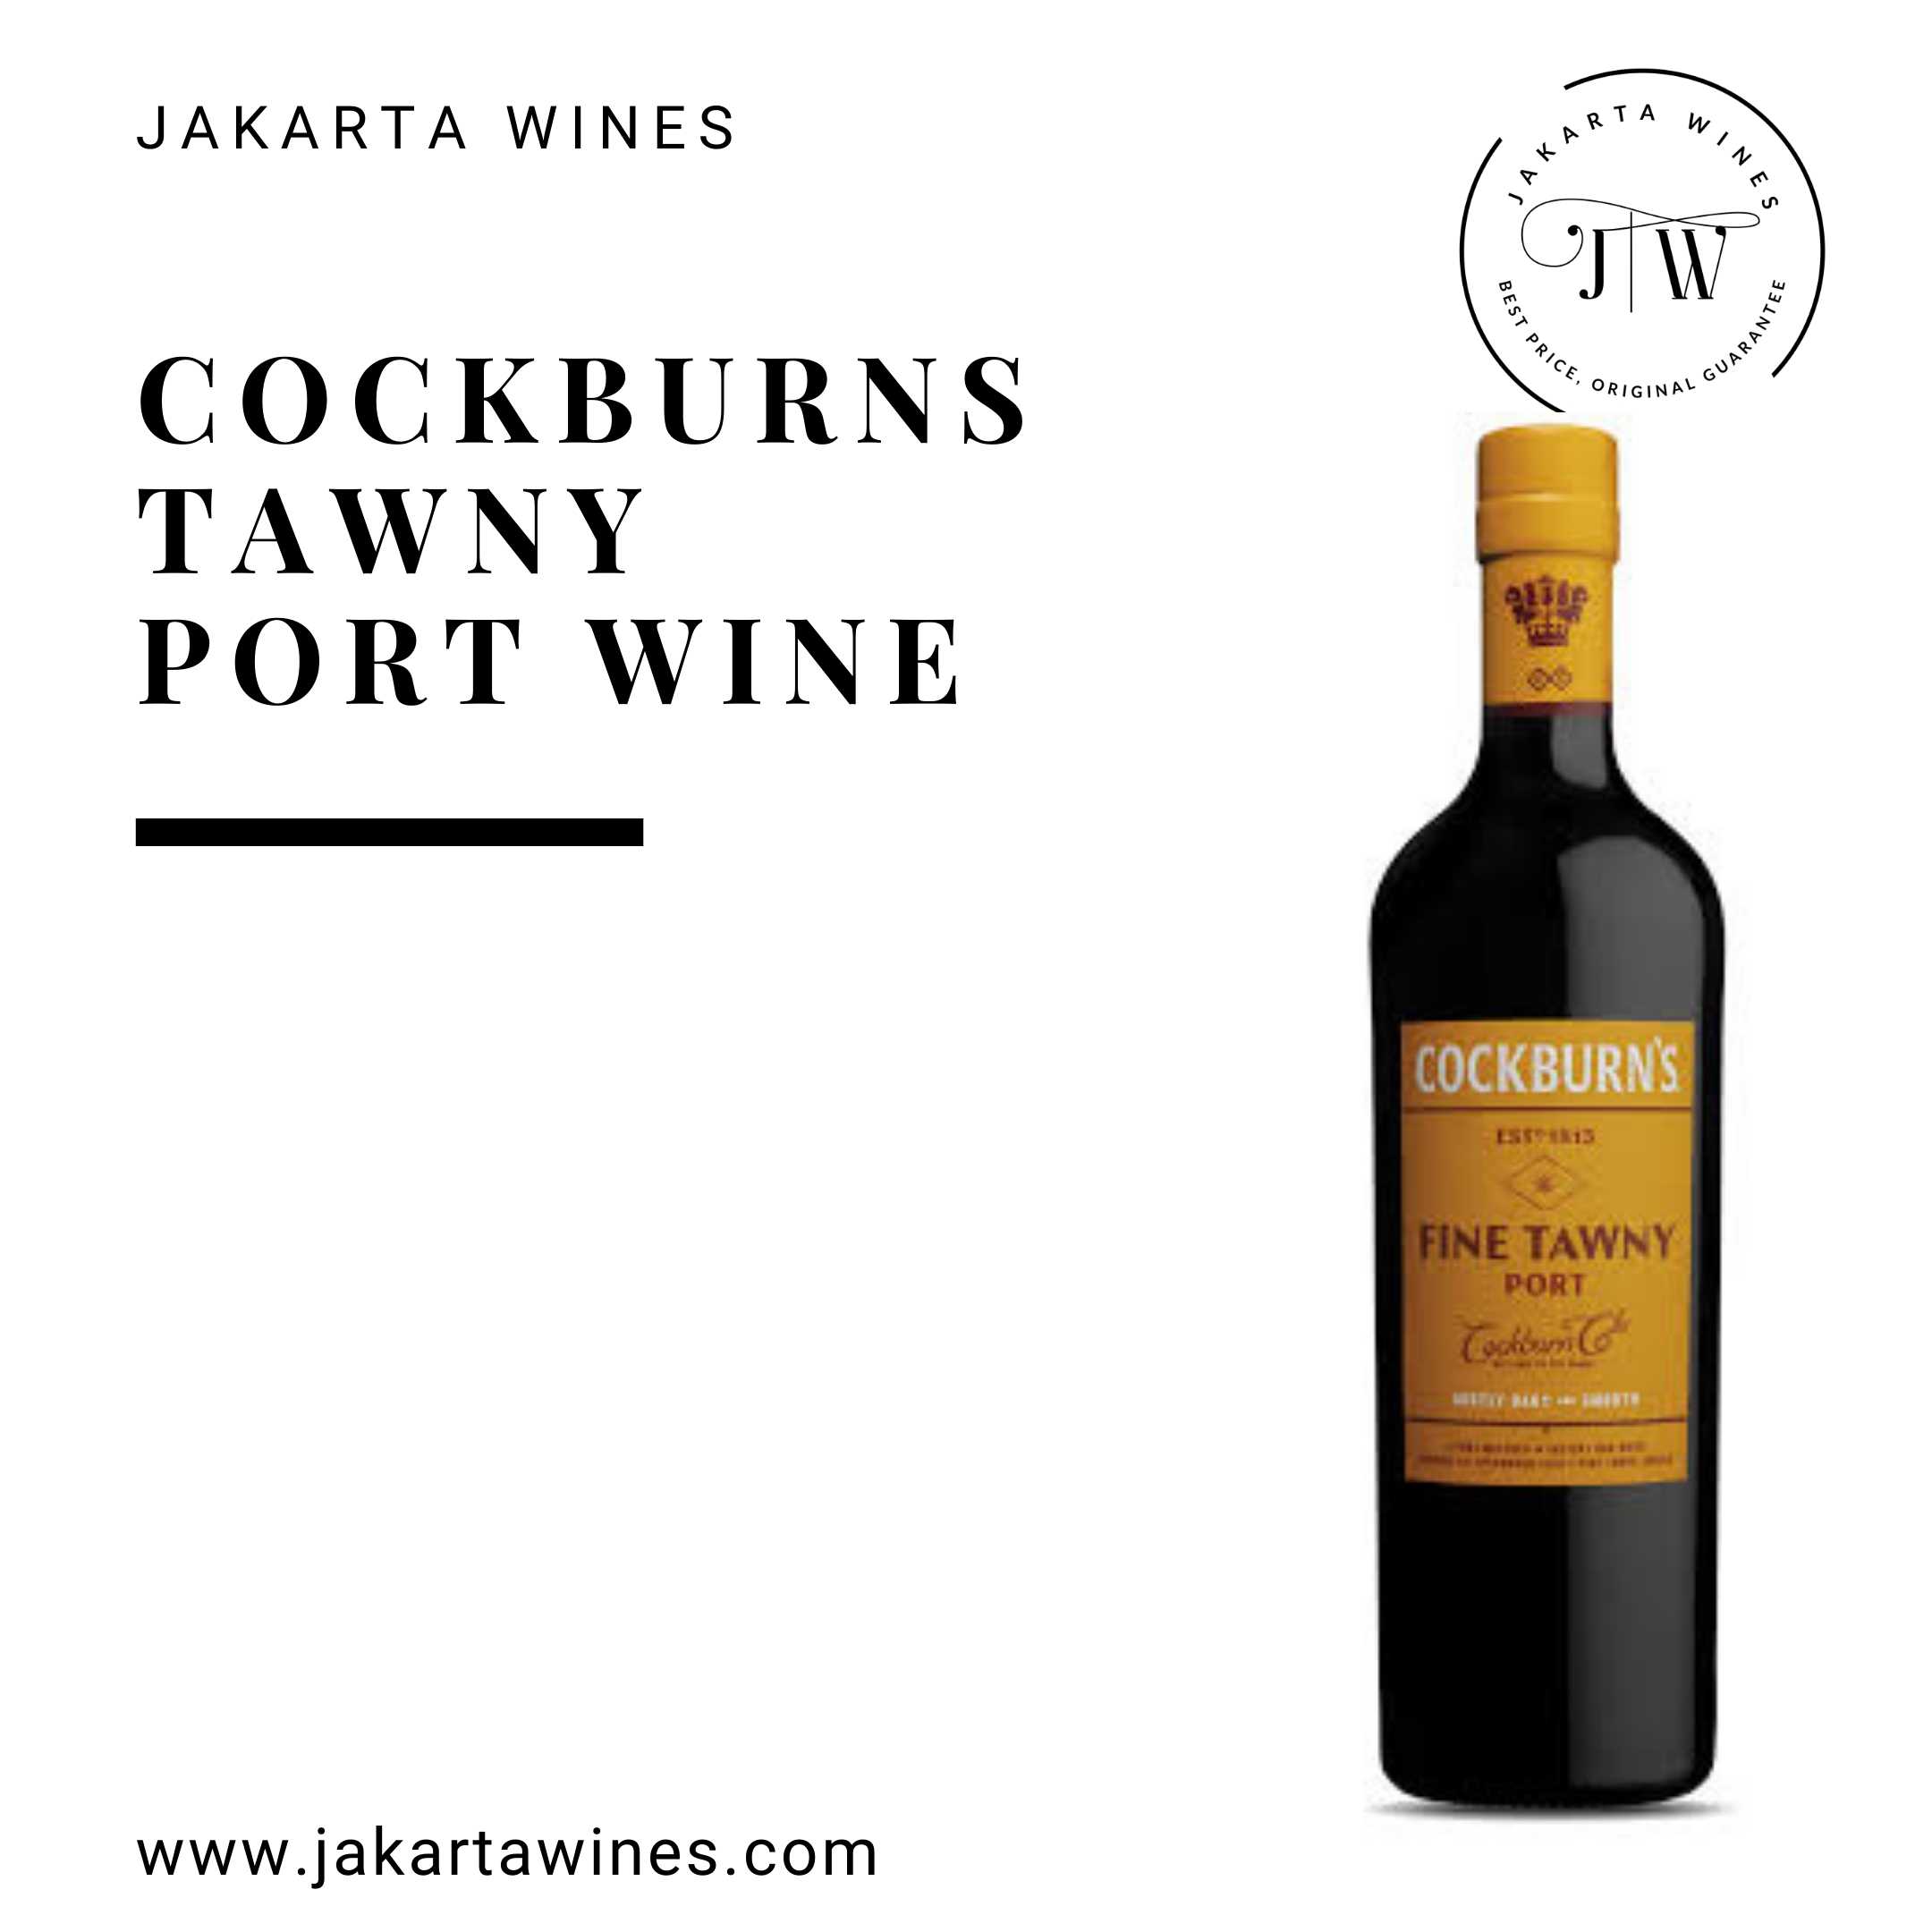 Pengiriman Wine terjangkau, gratis* Jual Wine Harga Spirits, Spirits Jakarta |